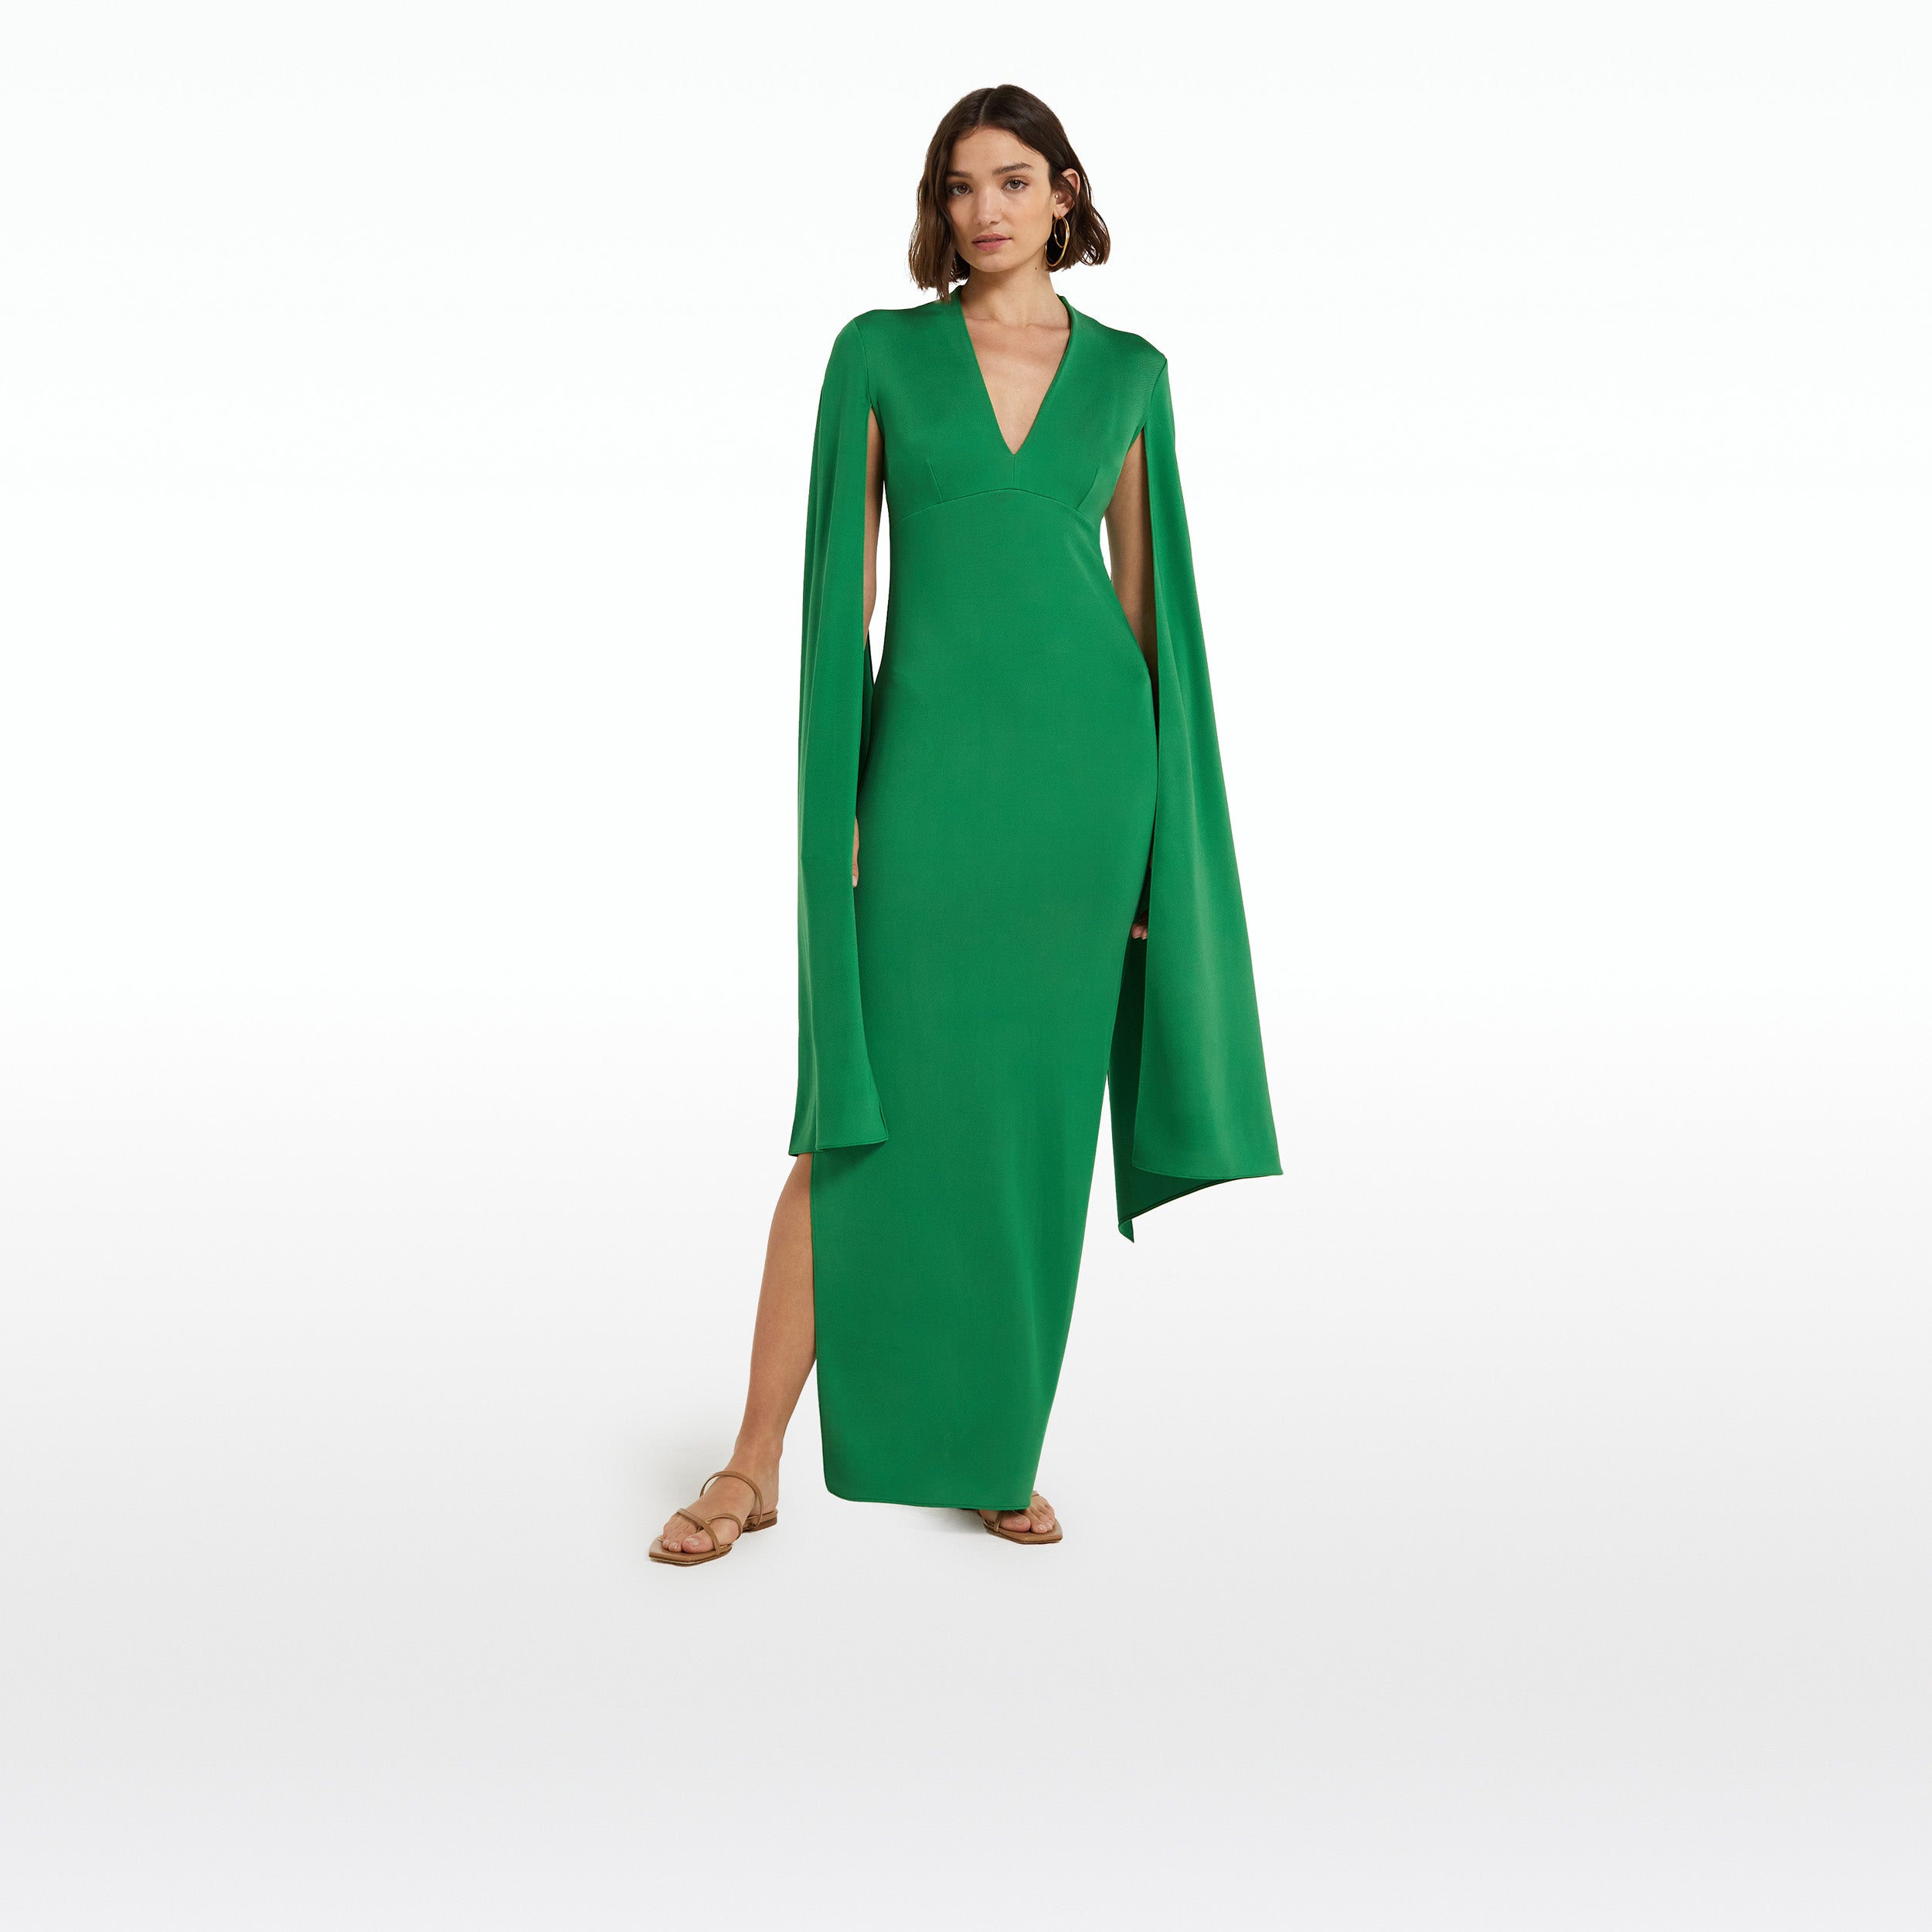 Tomesha Jewel Green Long Dress